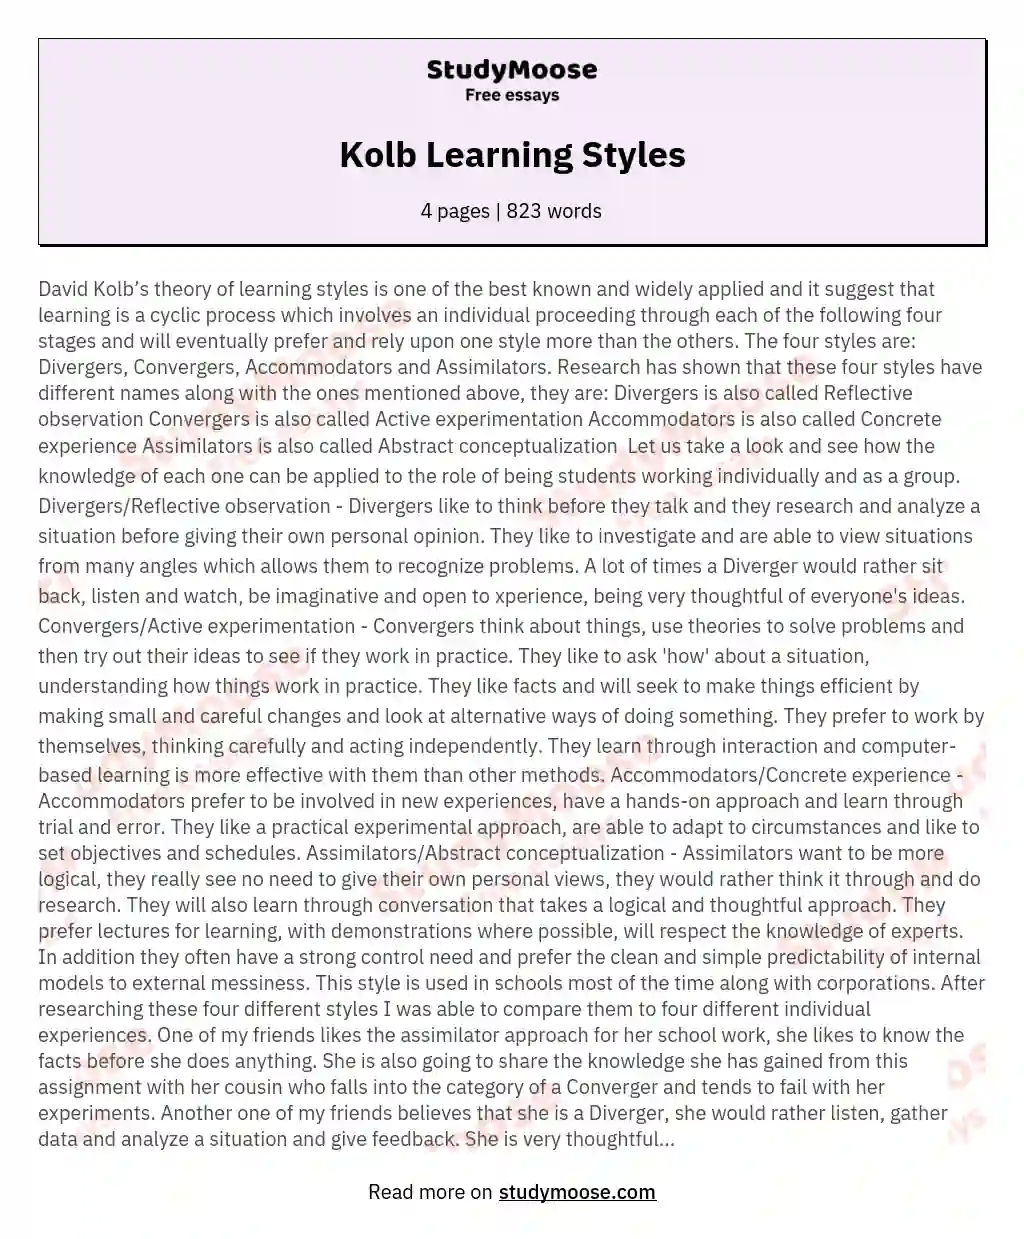 Kolb Learning Styles essay